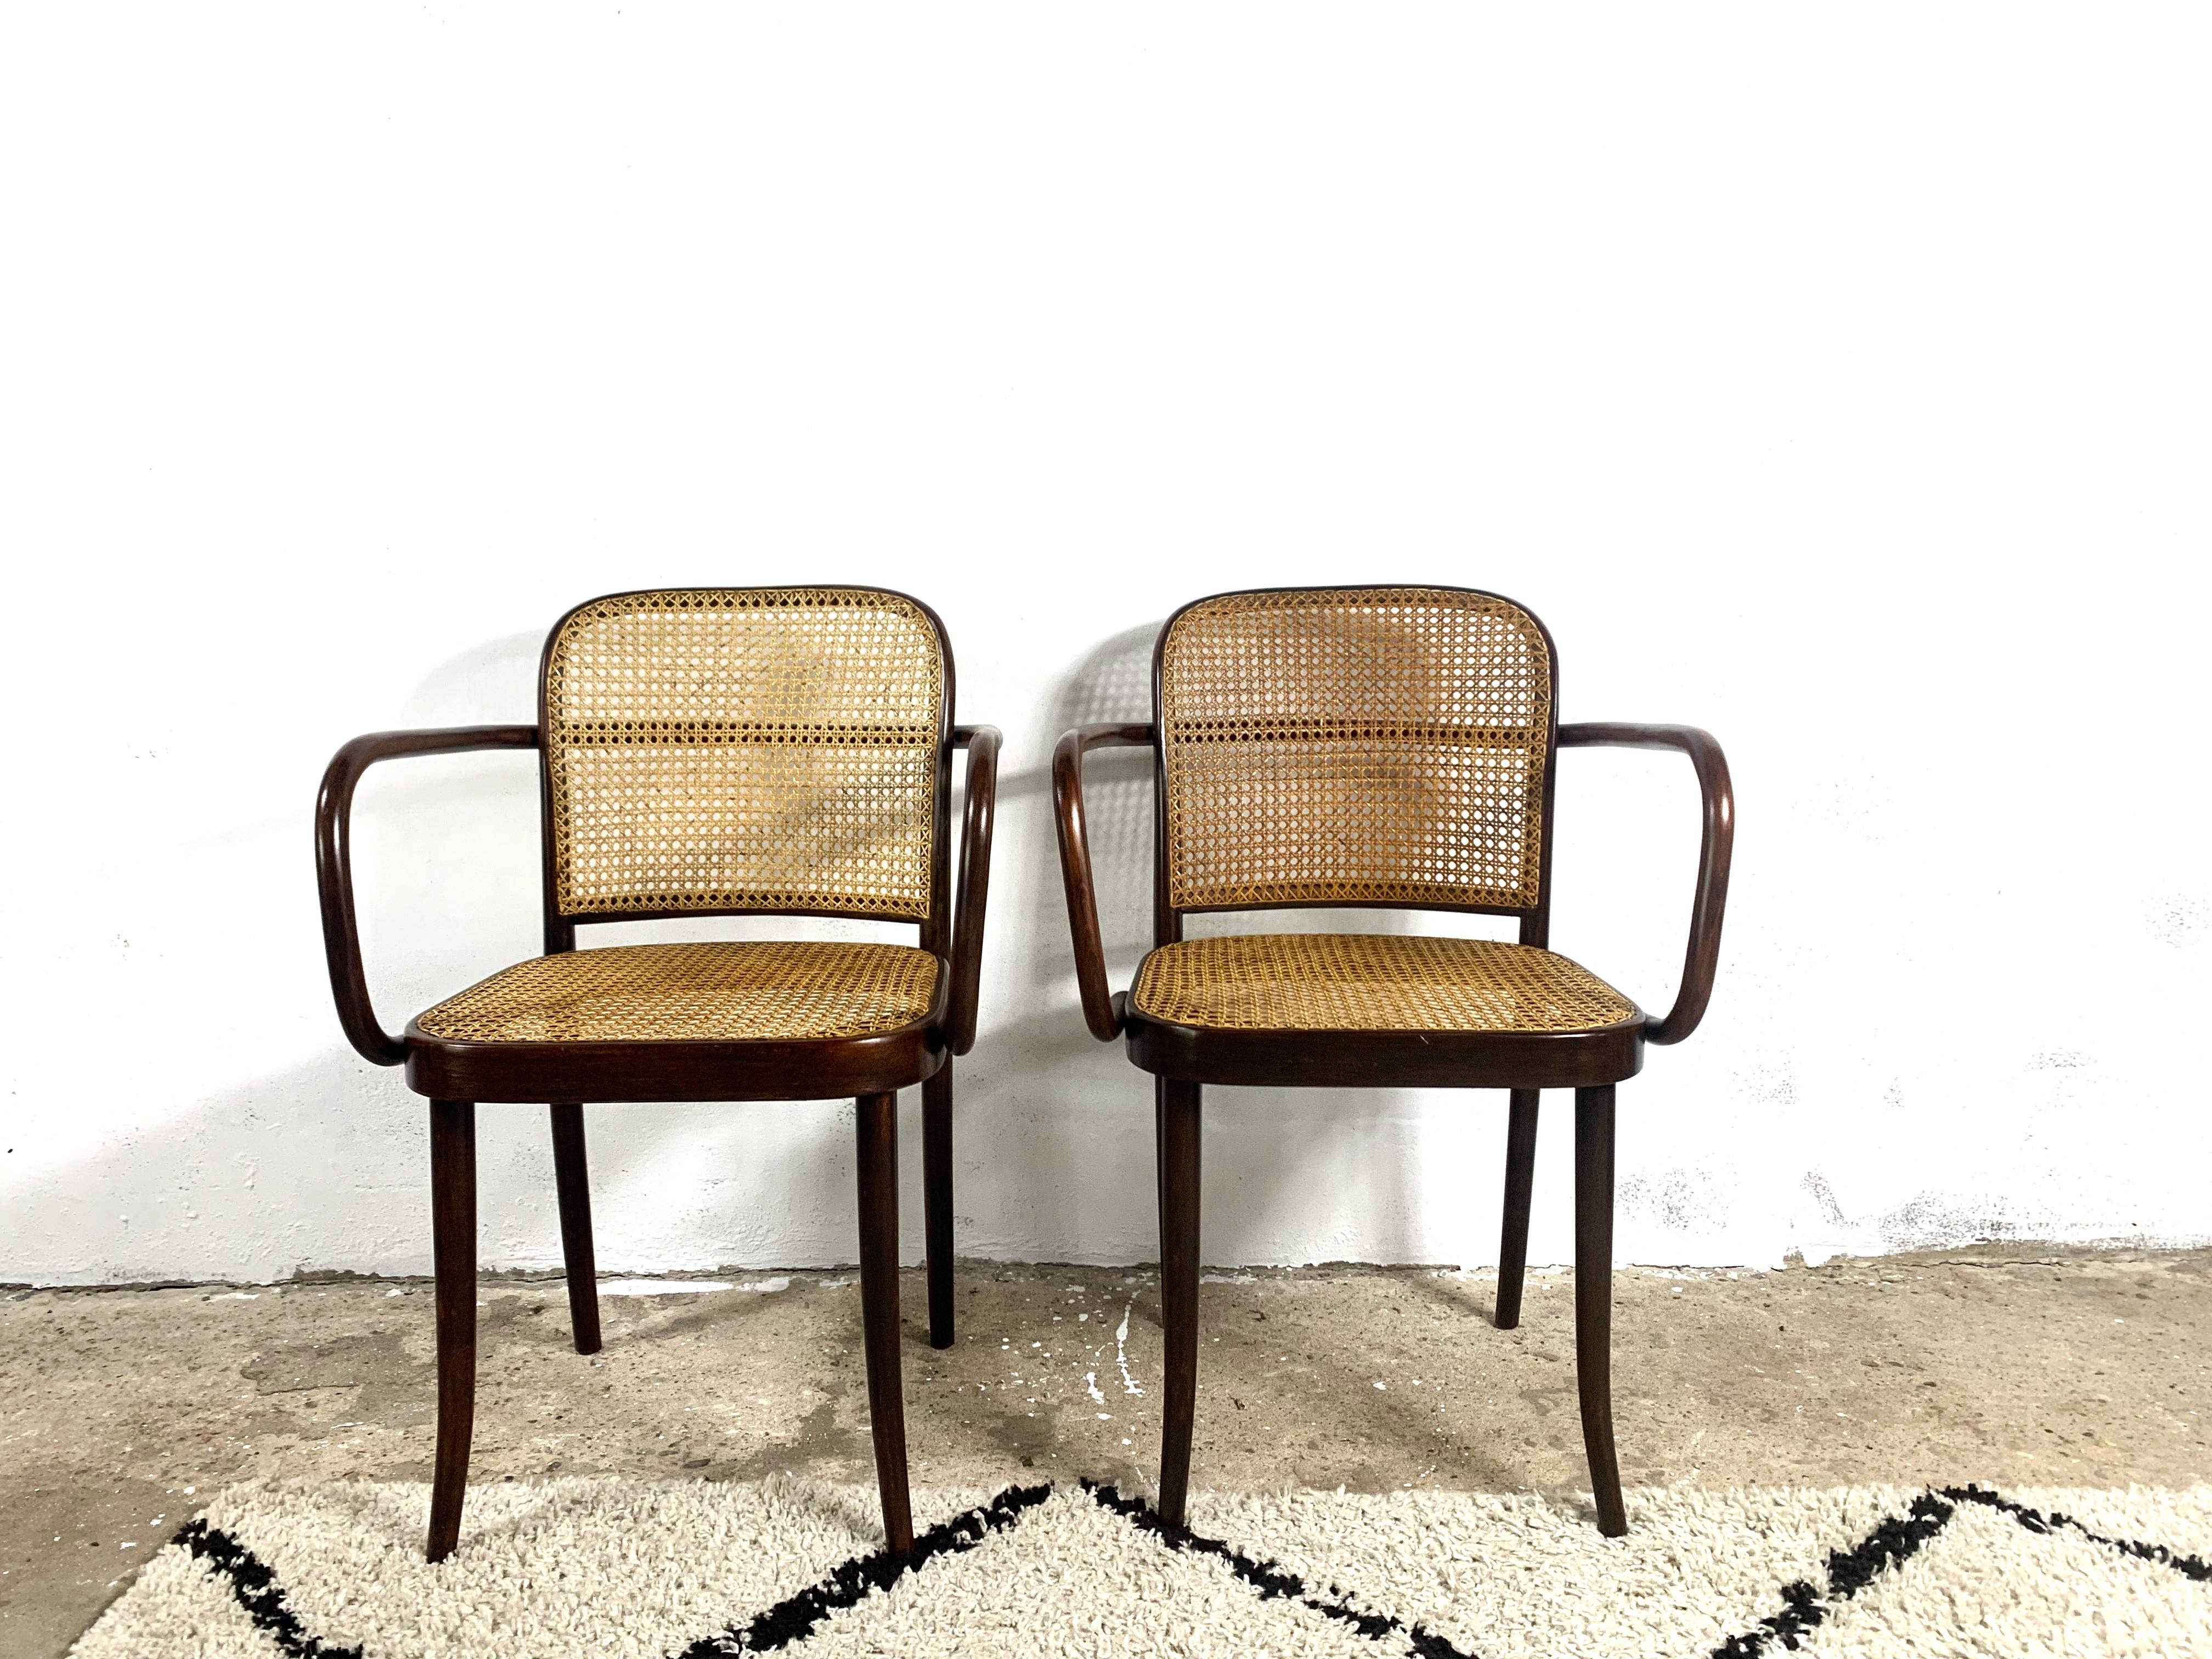 La chaise Thonet A811 est une variante de la chaise 811 avec accoudoirs. Le design des architectes viennois Jozef Hoffman et Jozef Frank a été créé dans les années 1920 et est toujours produit aujourd'hui. Les pièces présentées datent des années